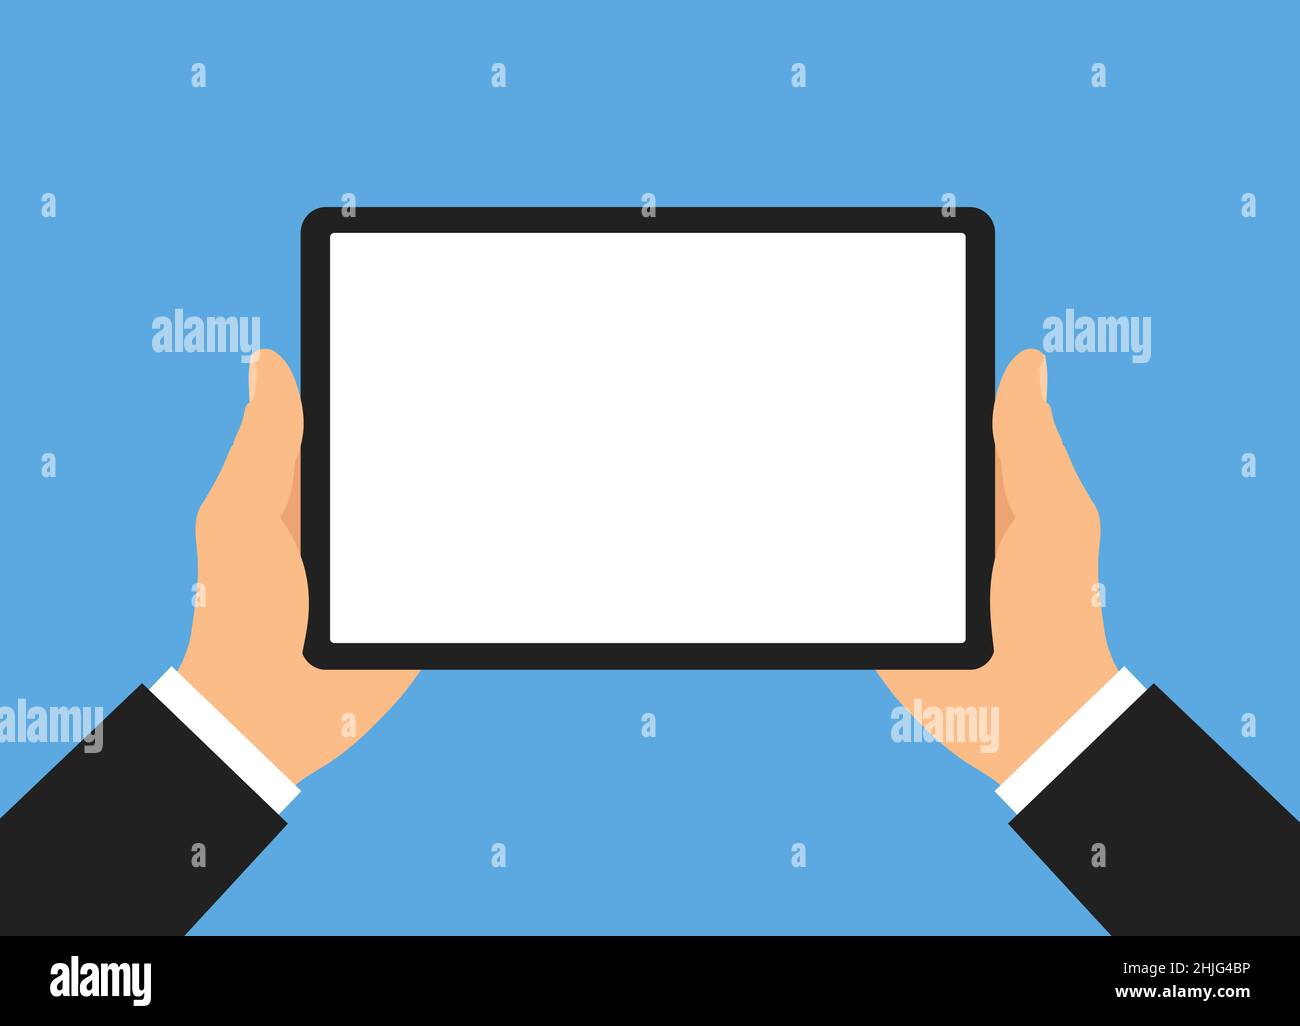 Flache Design Illustration von Manager oder Geschäftsmann Hände mit Tablet. Zeigt einen leeren weißen Touchscreen mit Platz für Bild und Text - Vektor Stock Vektor